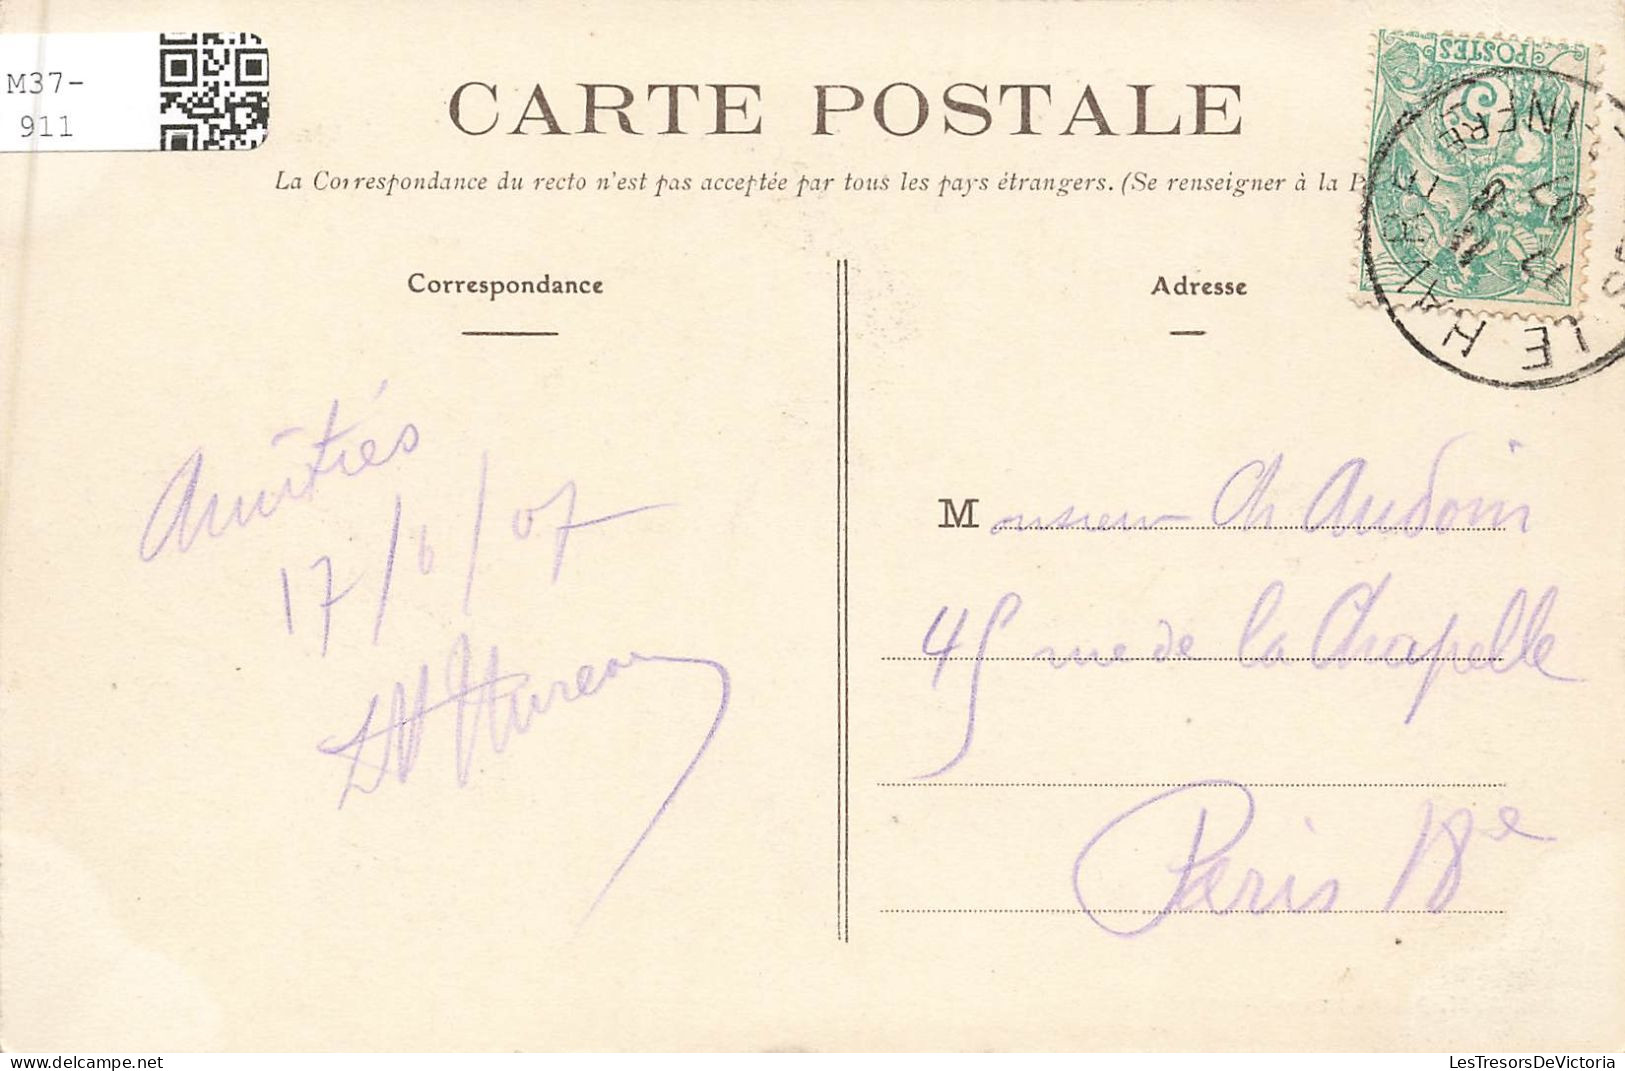 FRANCE - Le Havre - Le Palais De Justice - Carte Postale Ancienne - Non Classificati